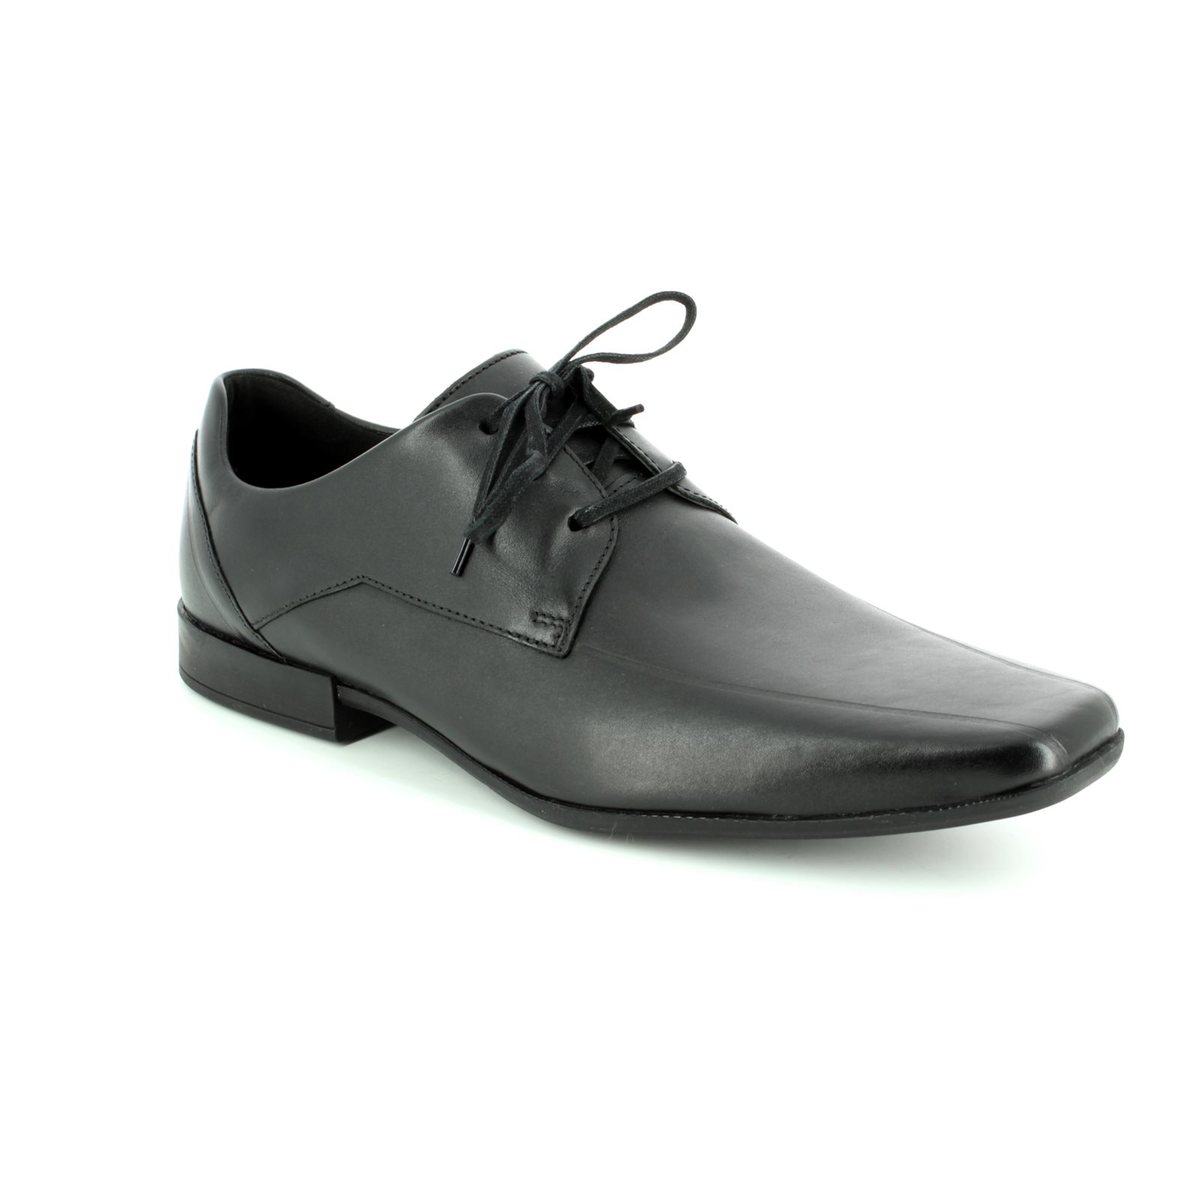 G Fit Black formal shoes